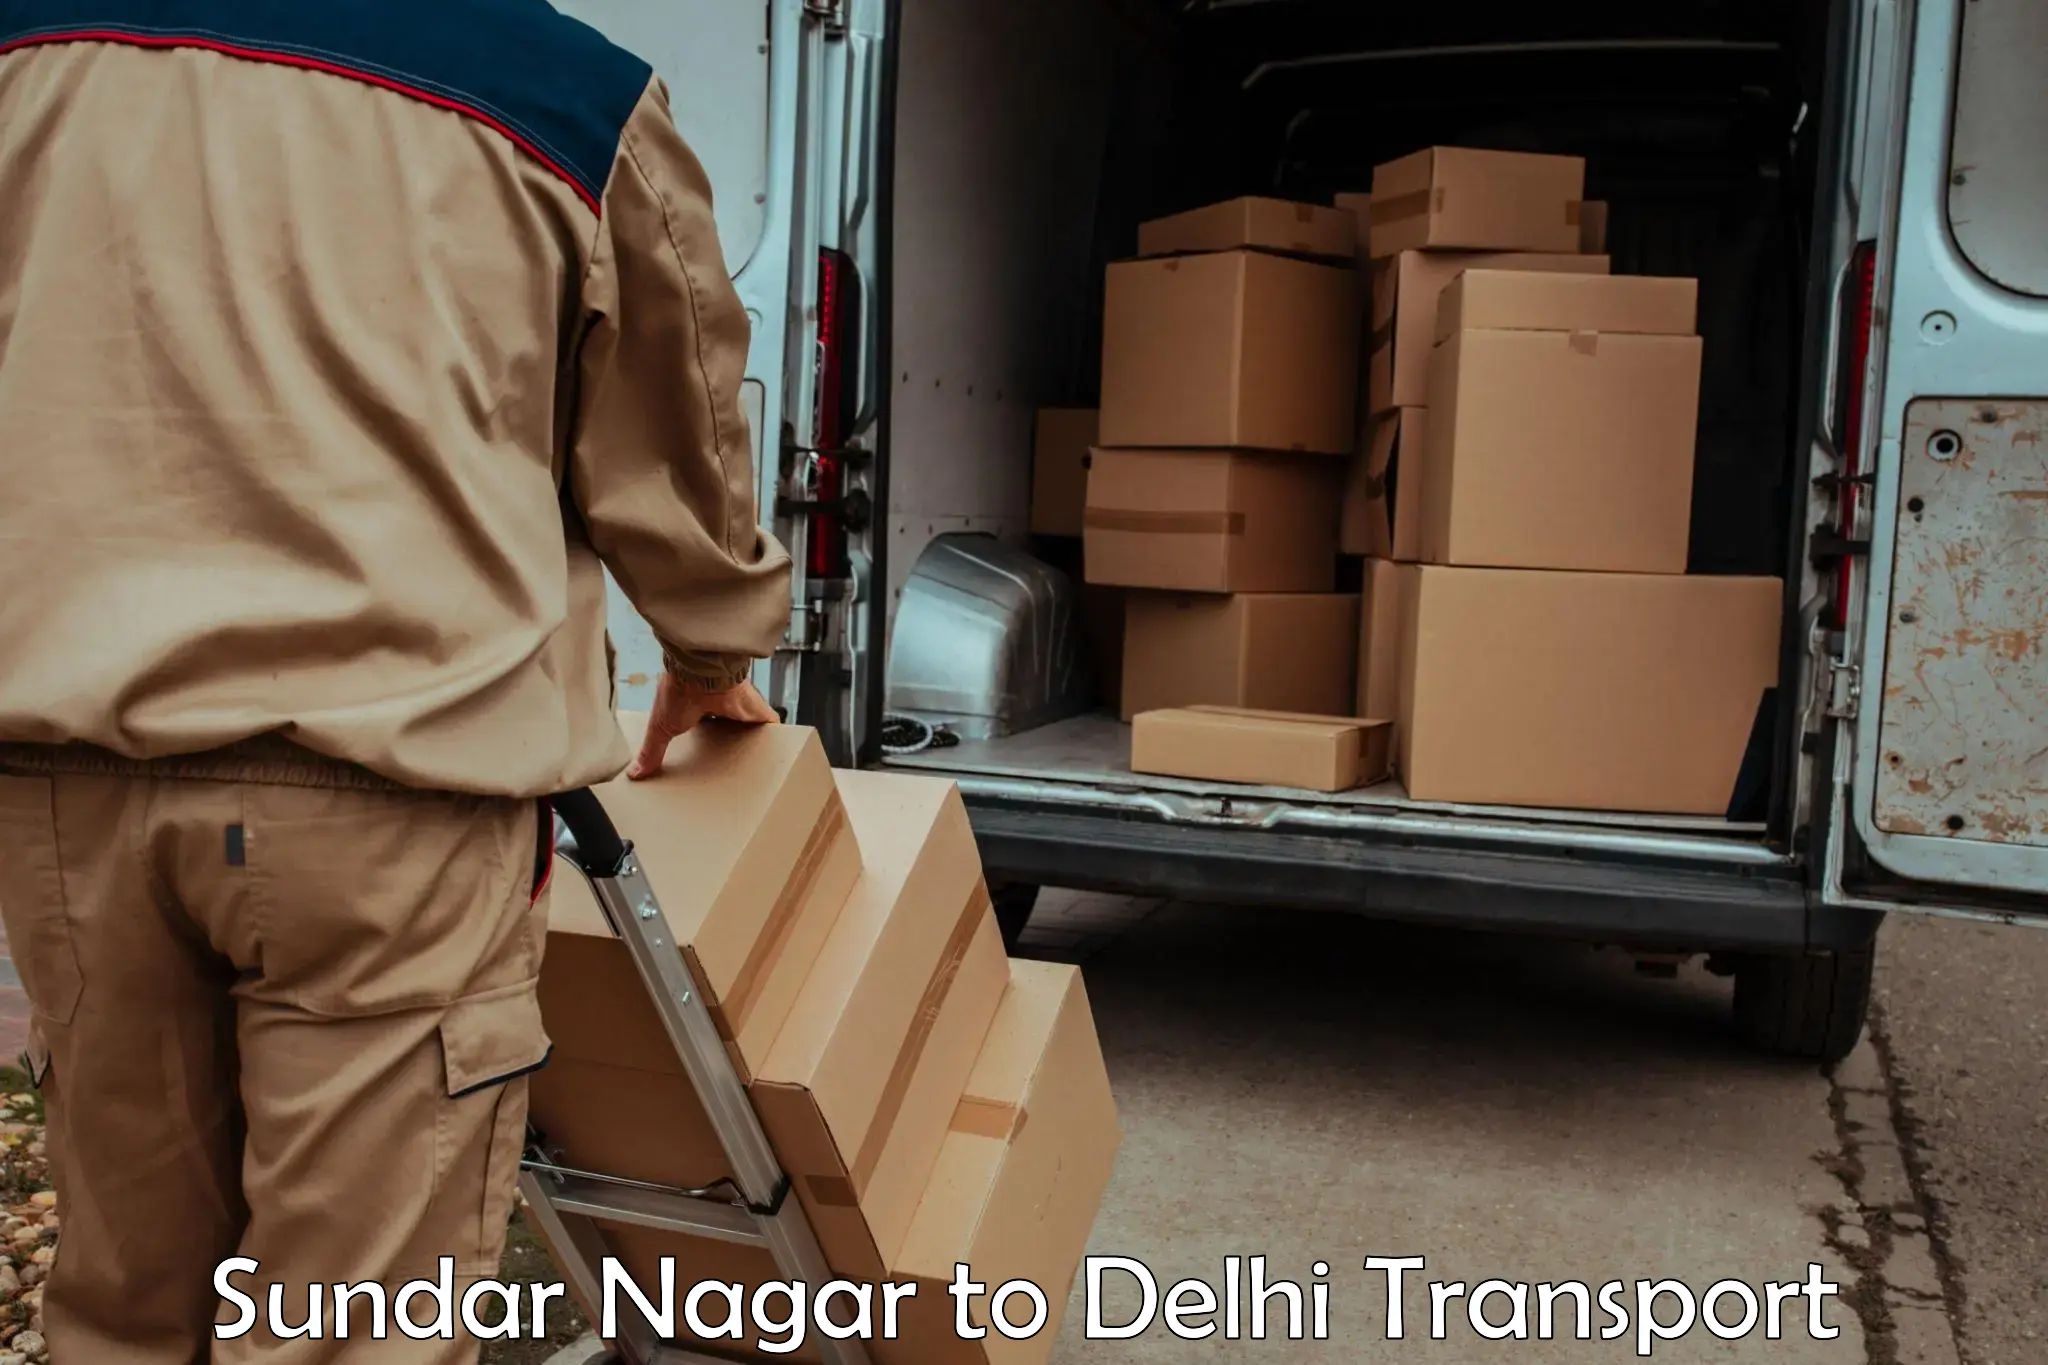 Cargo transport services Sundar Nagar to Delhi